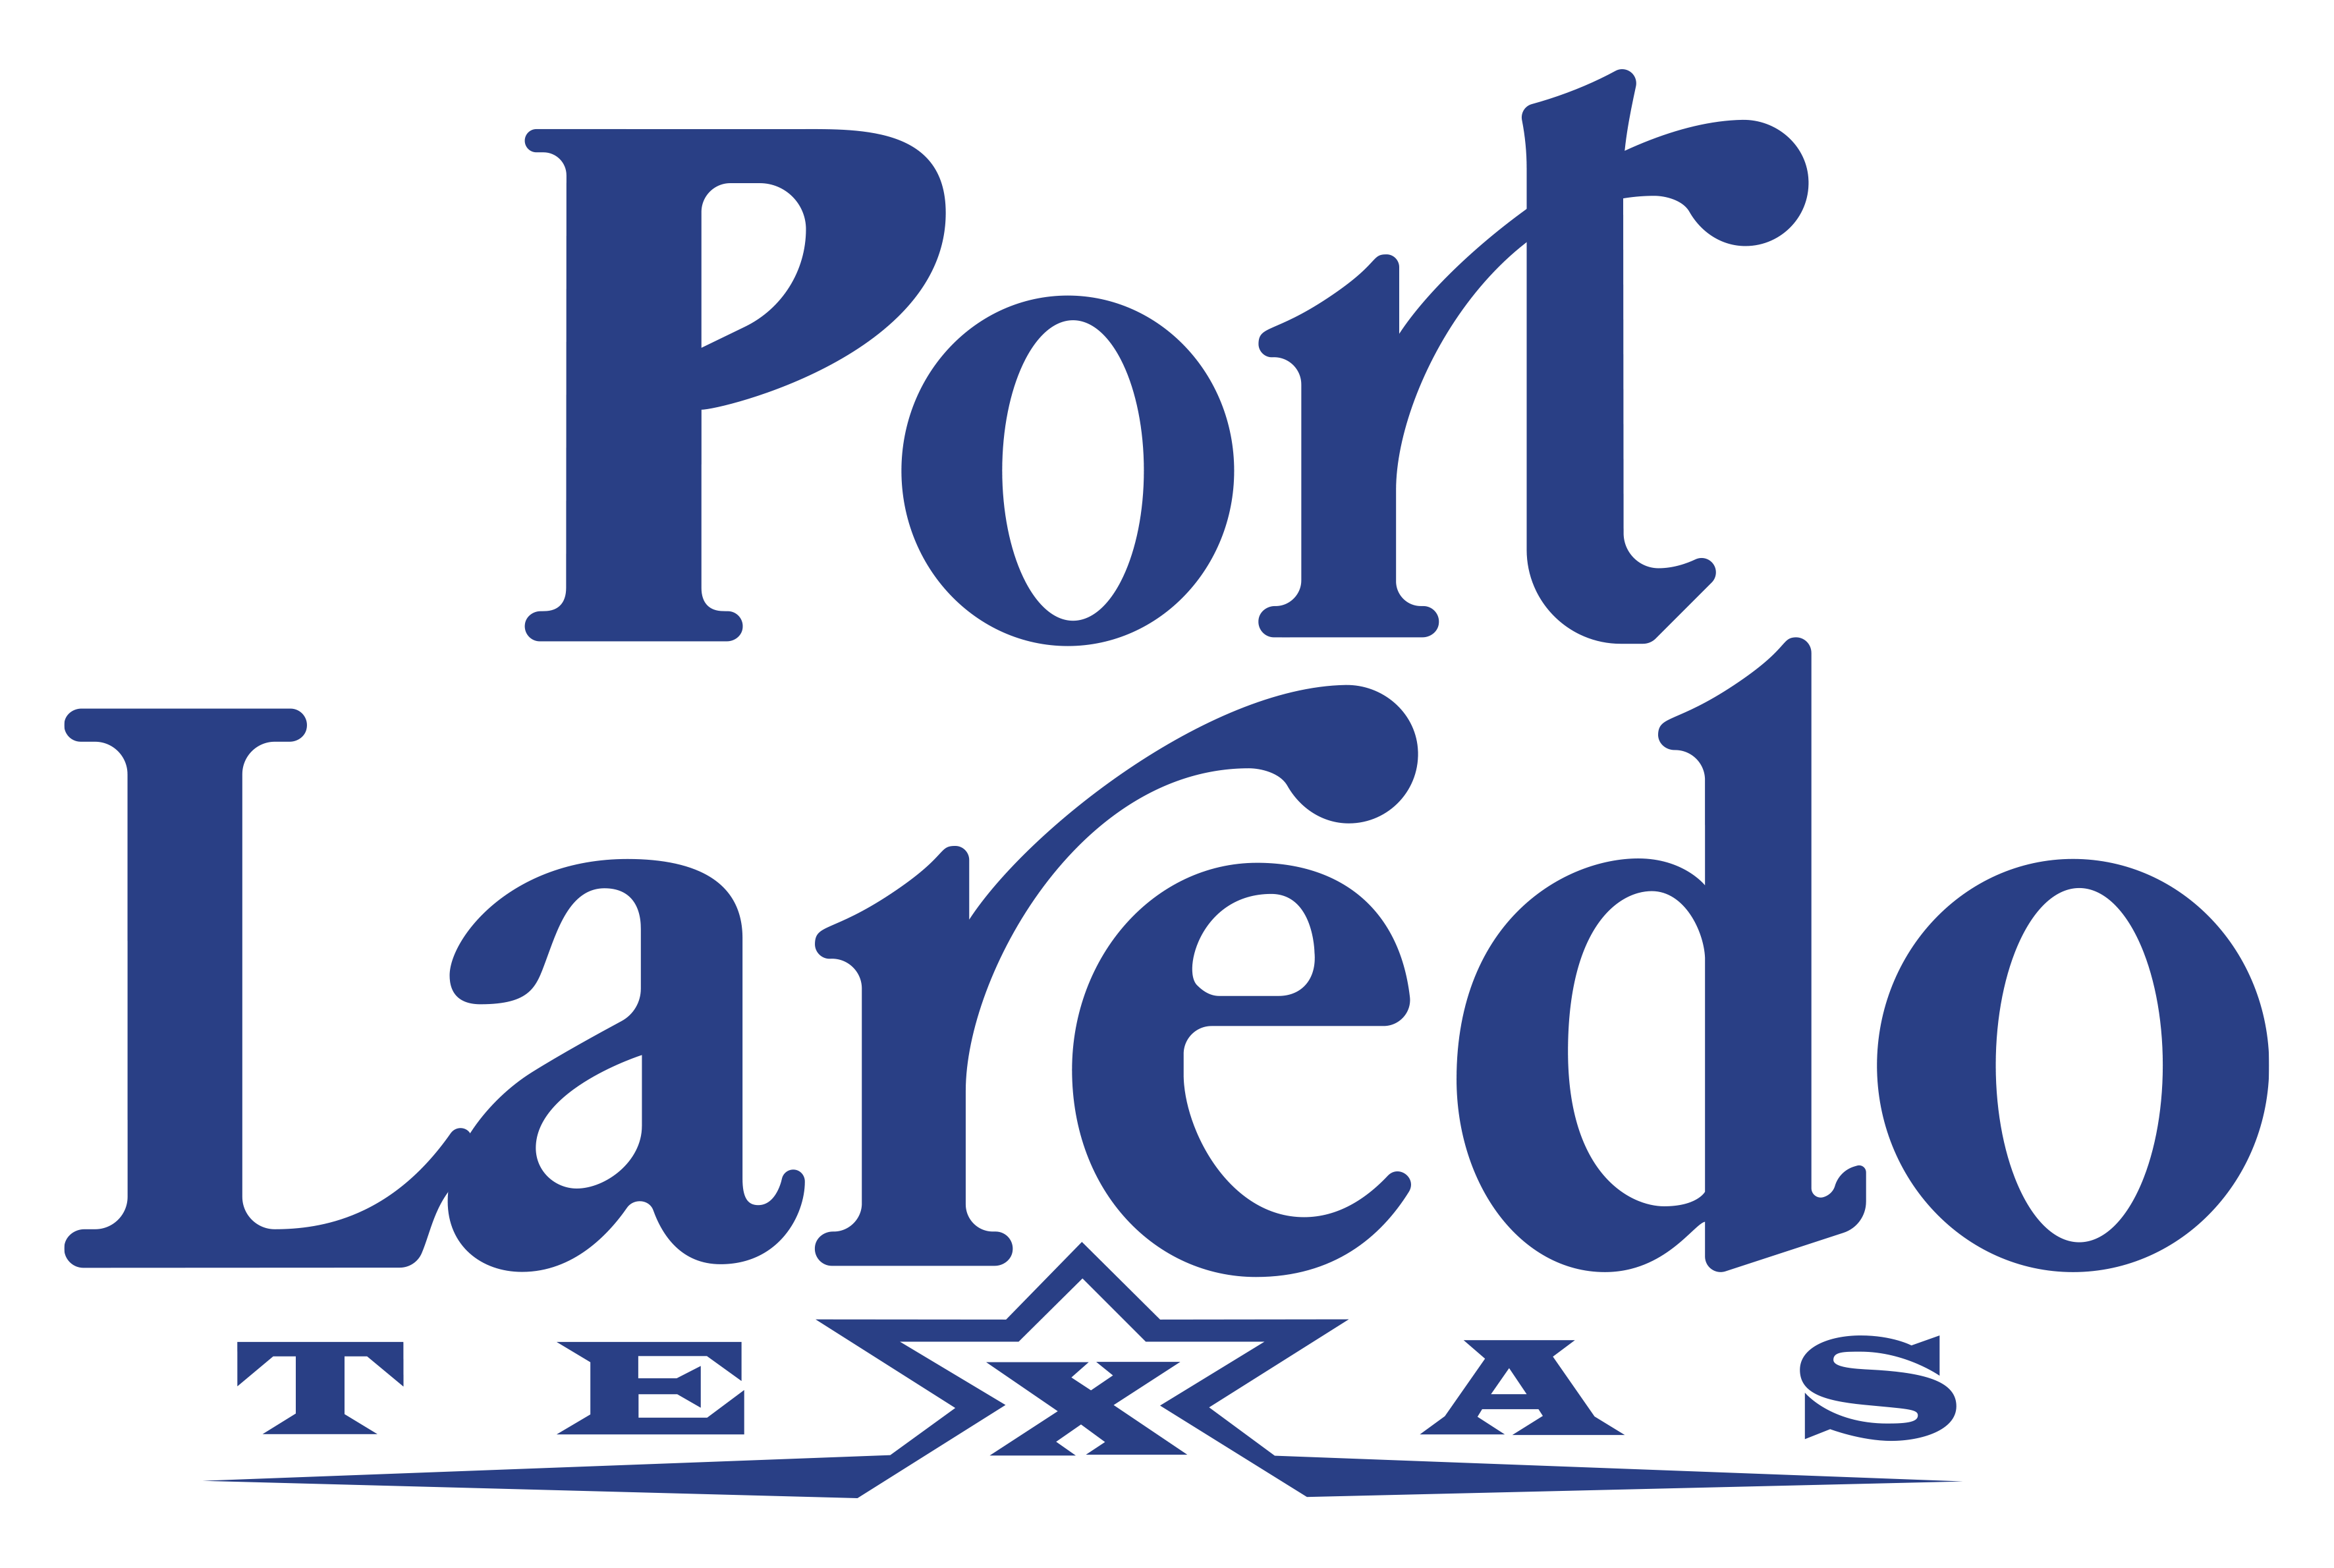 Port Laredo